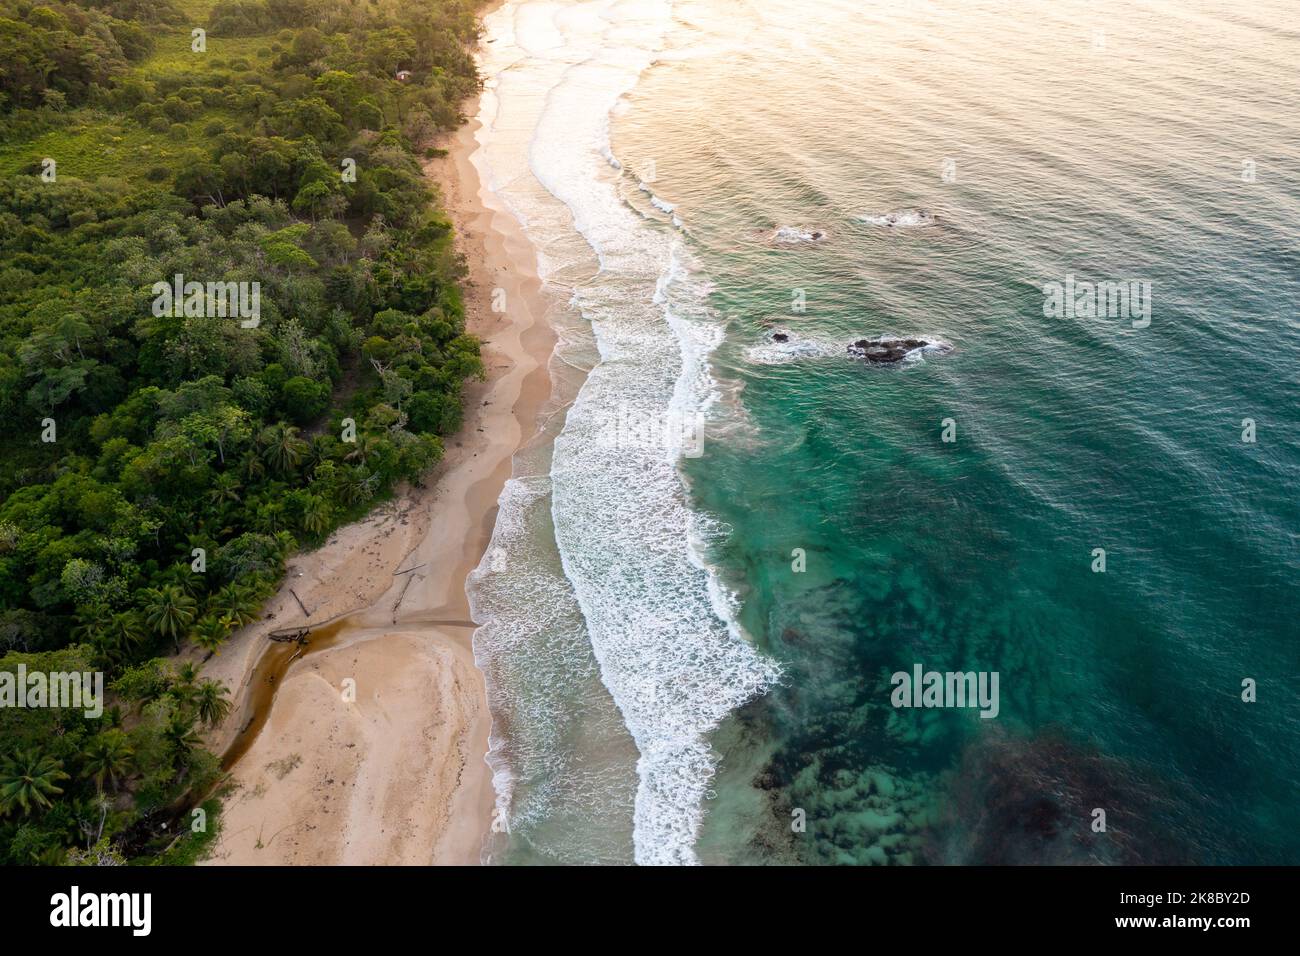 Panama. Vista aerea dell'isola tropicale. Linea costiera selvaggia lussureggiante giungla verde esotica. Red Frog Beach a Bastimentos Island, Bocas del Toro, America Centrale Foto Stock